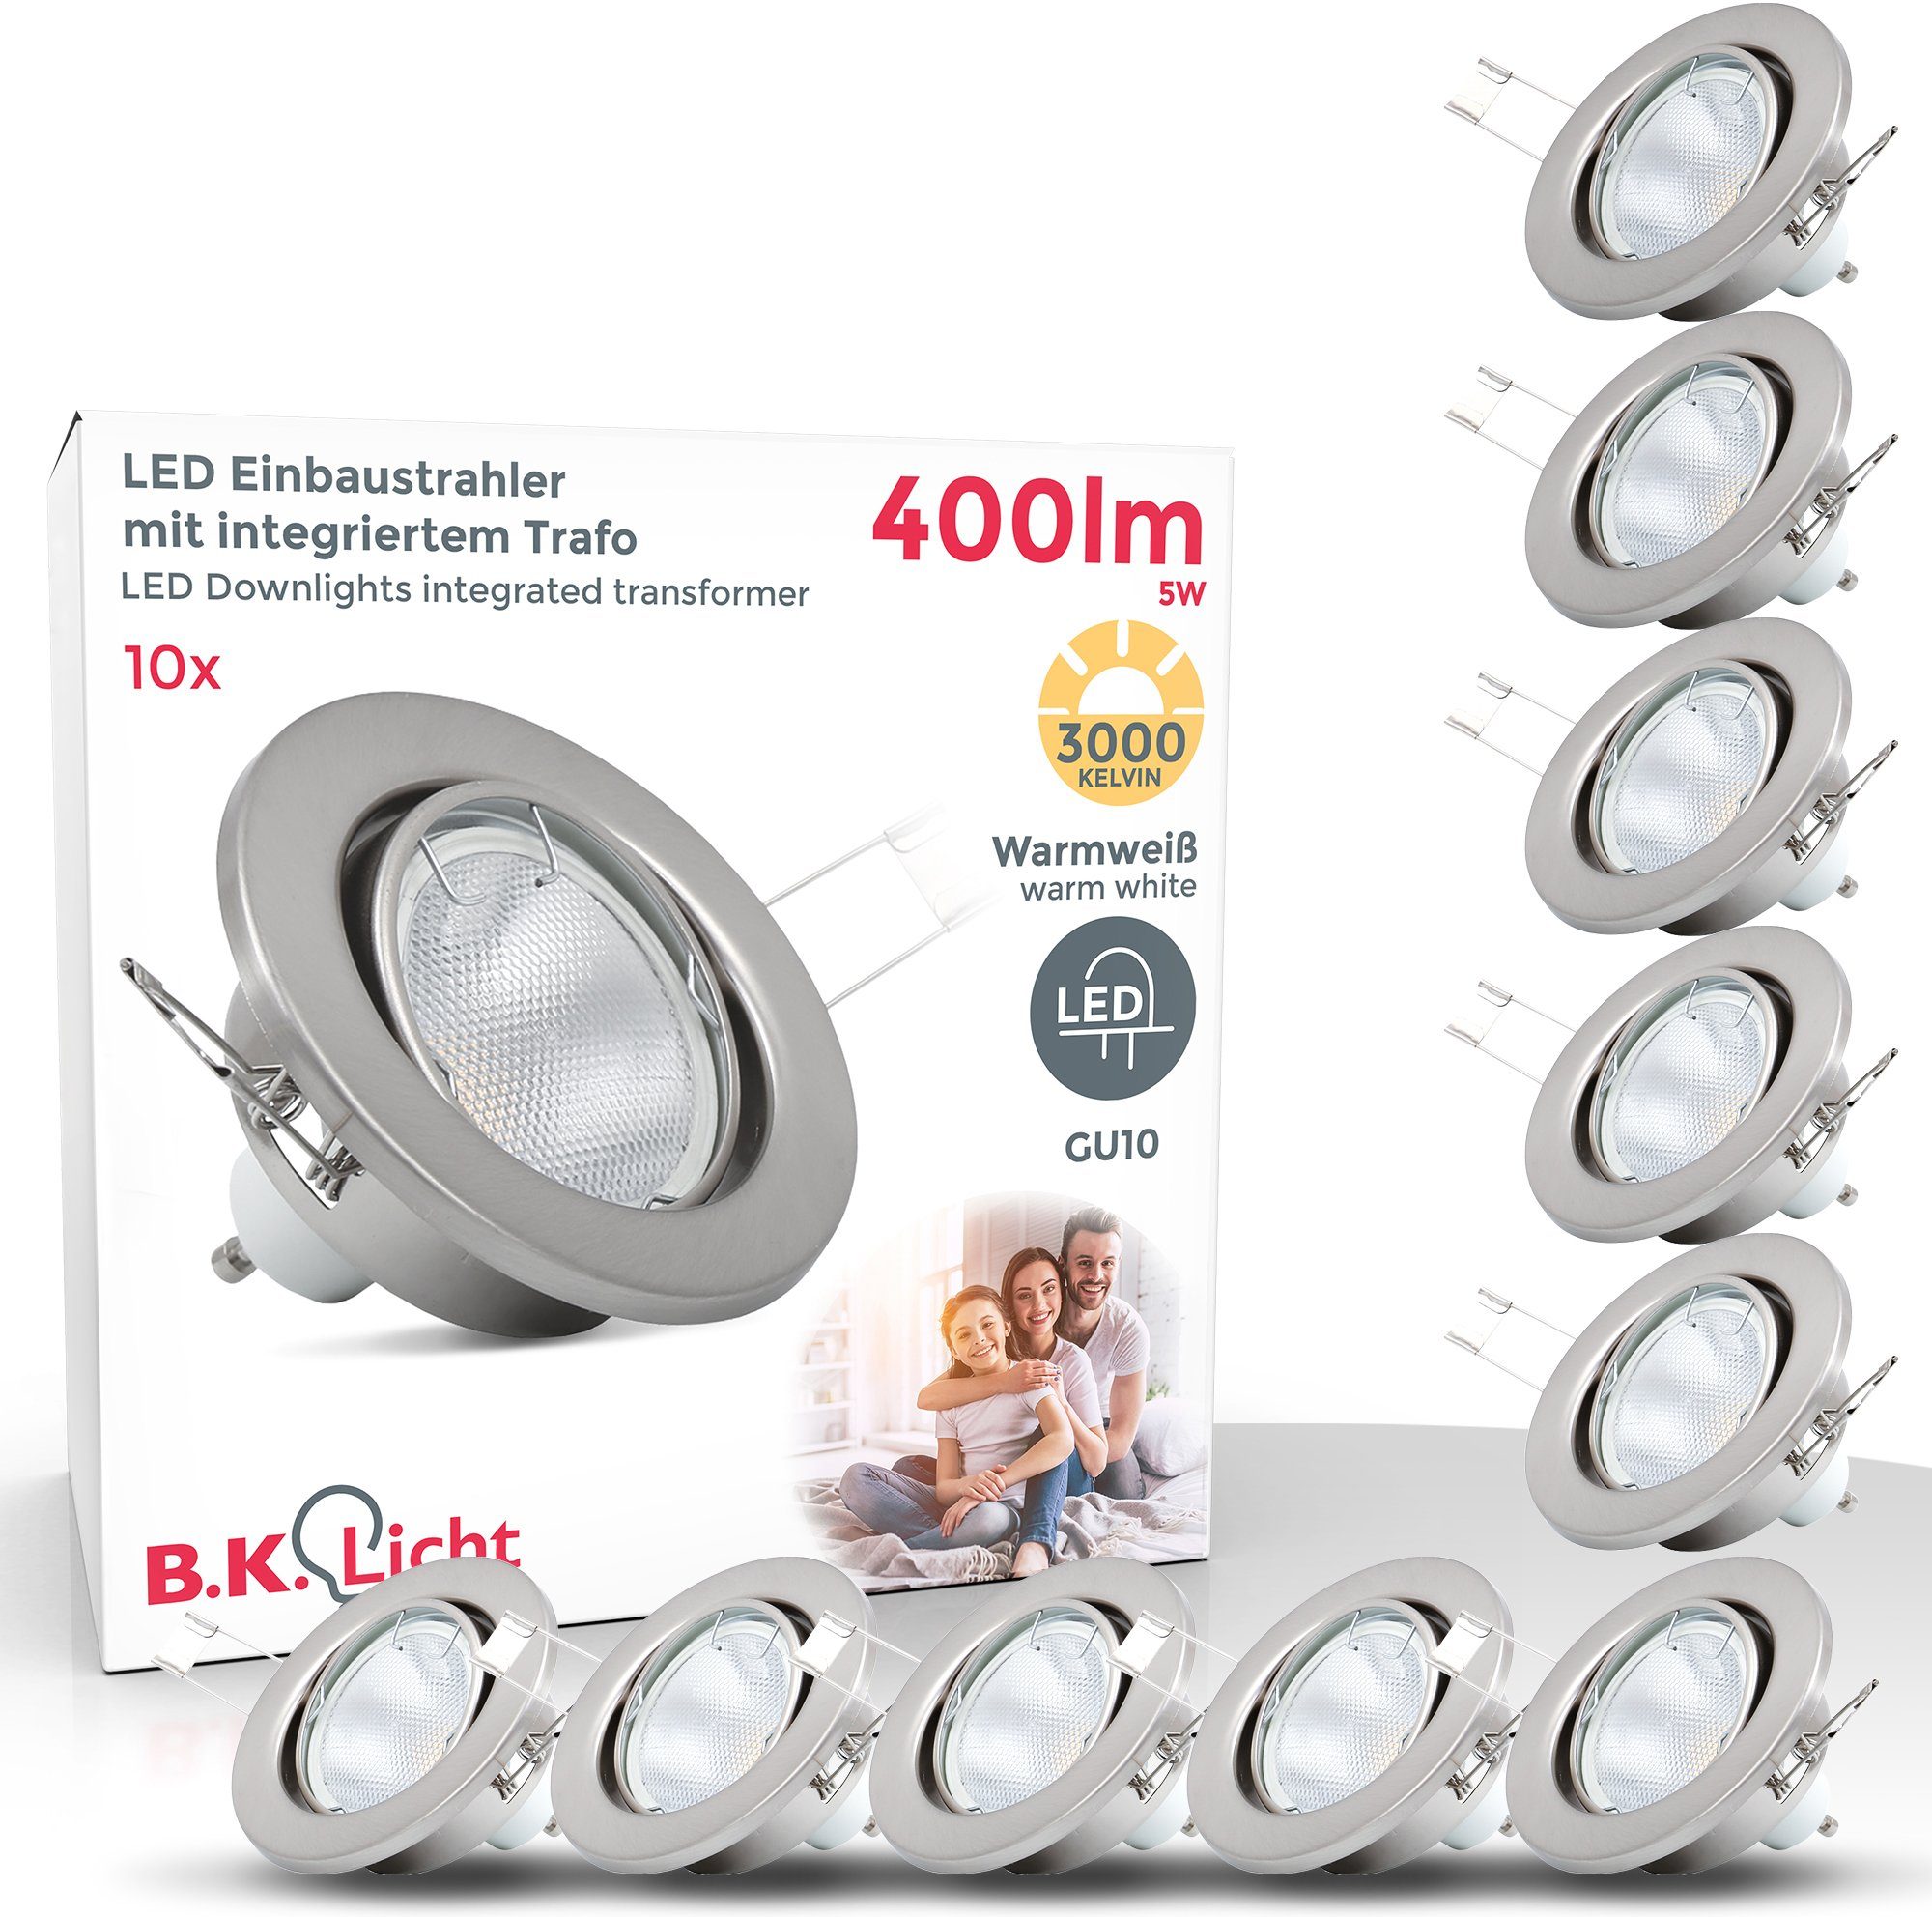 matt B.K.Licht wechselbar, Warmweiß, LED GU10 Einbauleuchten, LED LED schwenkbar, nickel, Einbaustrahler, Einbau-Spots,